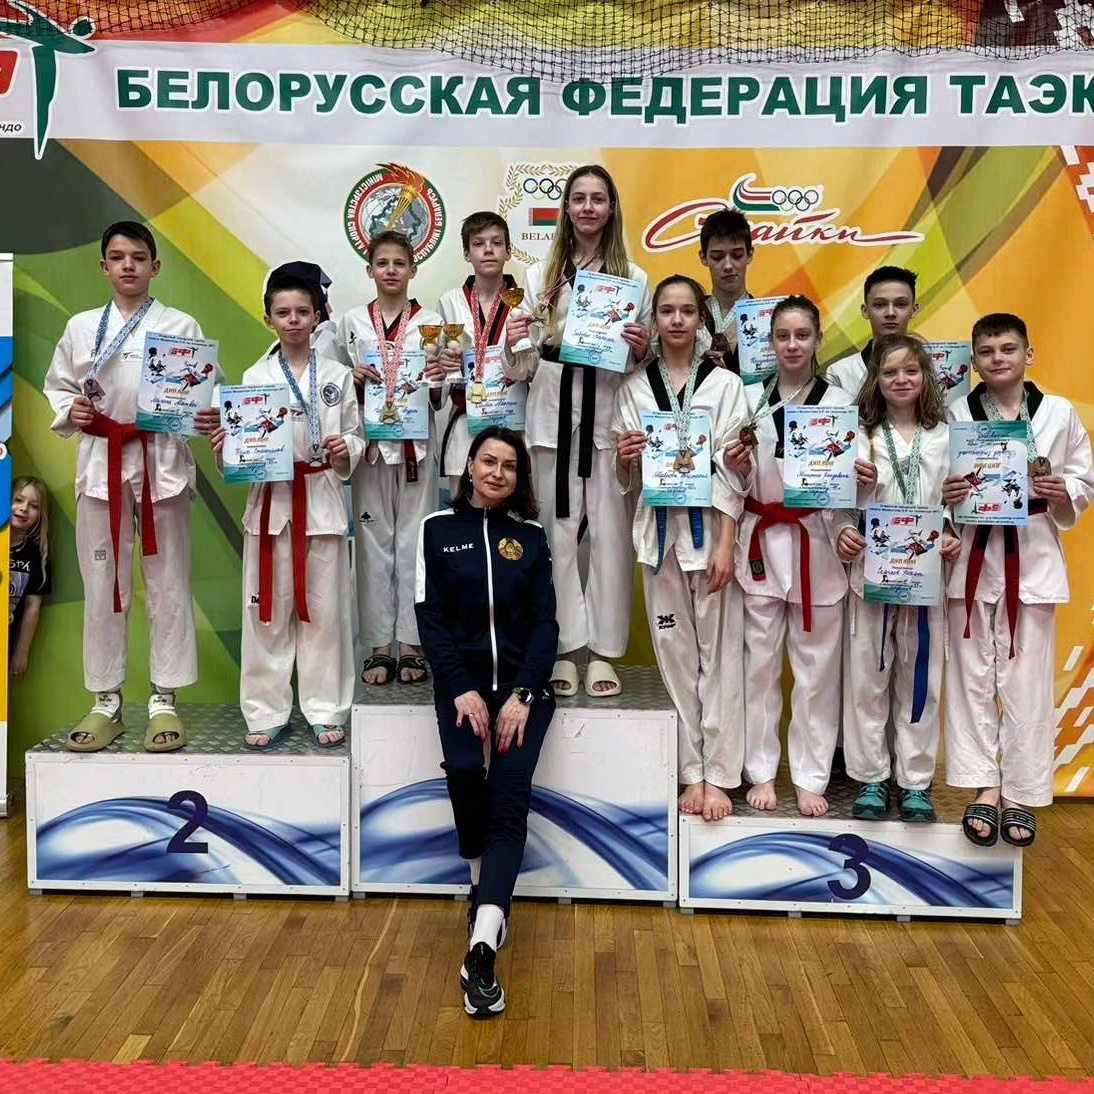 Республиканский турнир по таэквондо WT прошел в Минске.